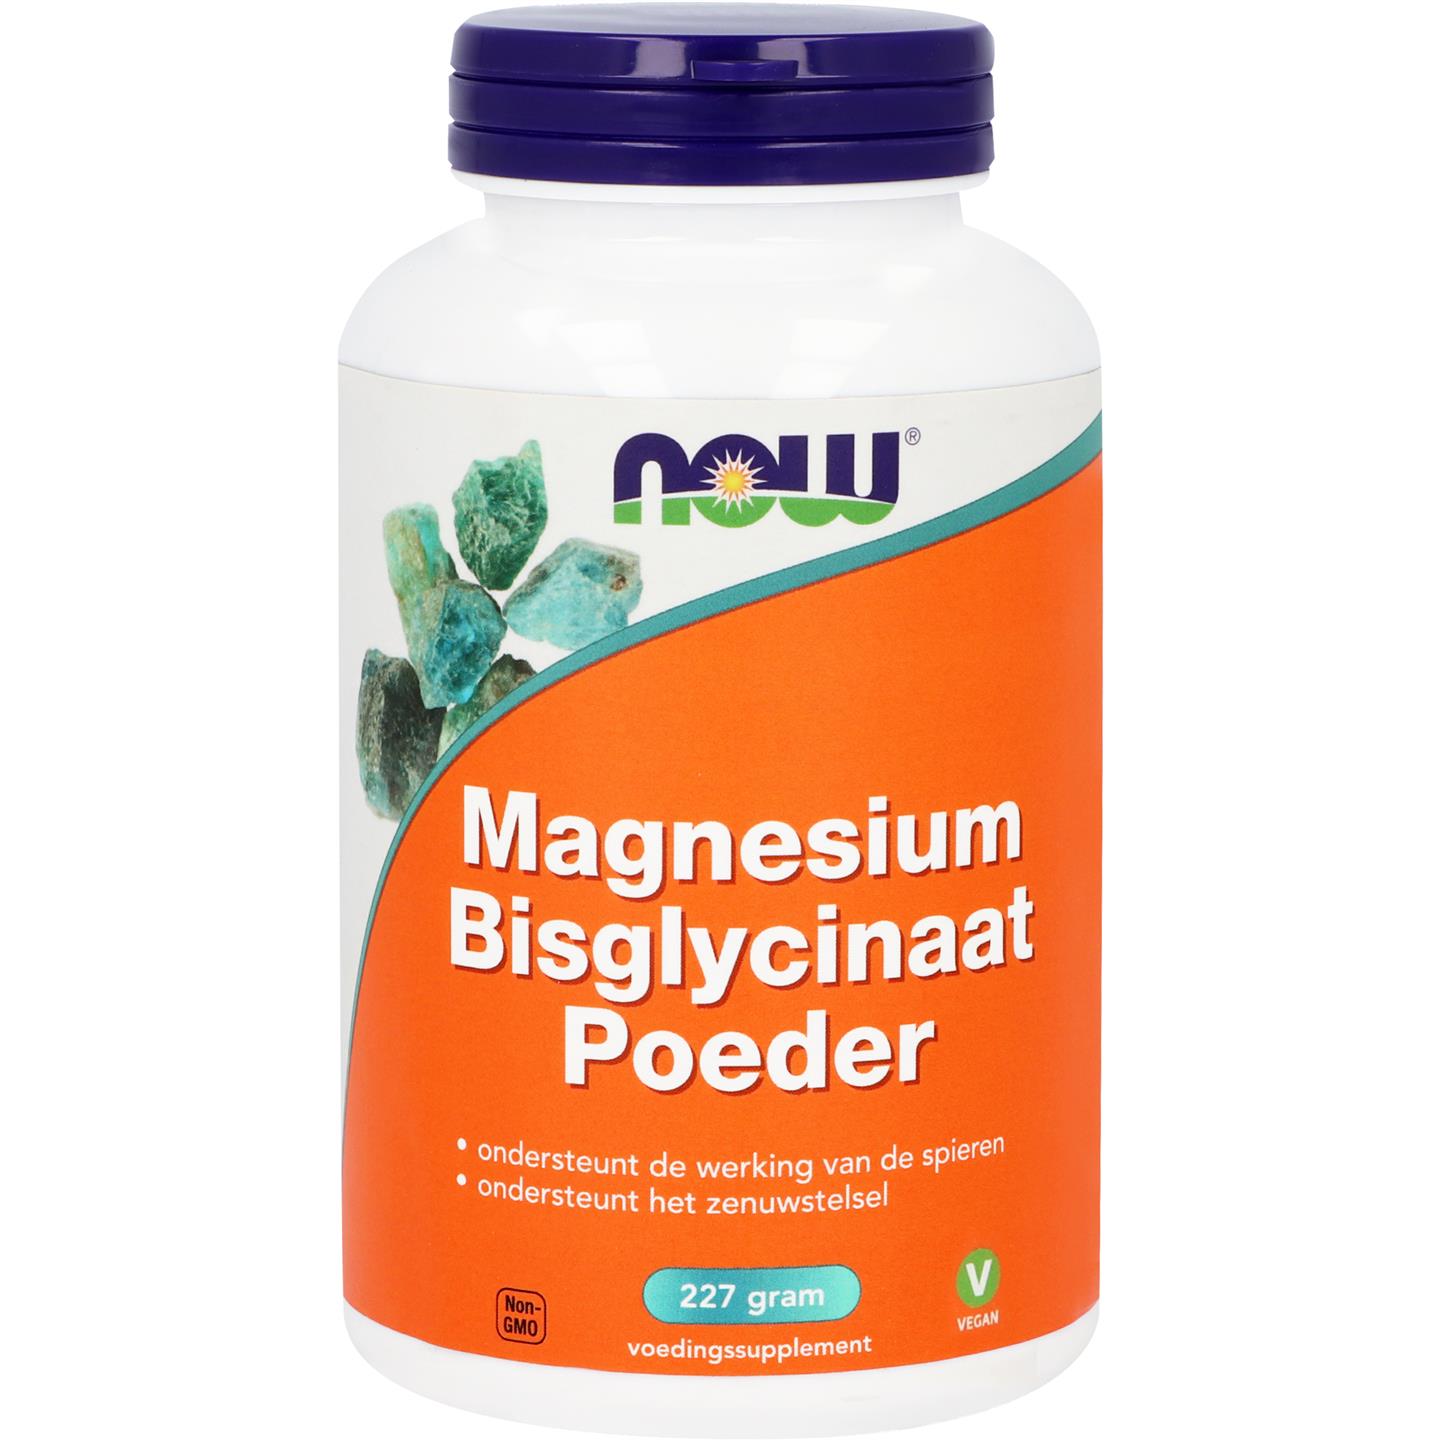 Magnesium Bisglycinaat poeder